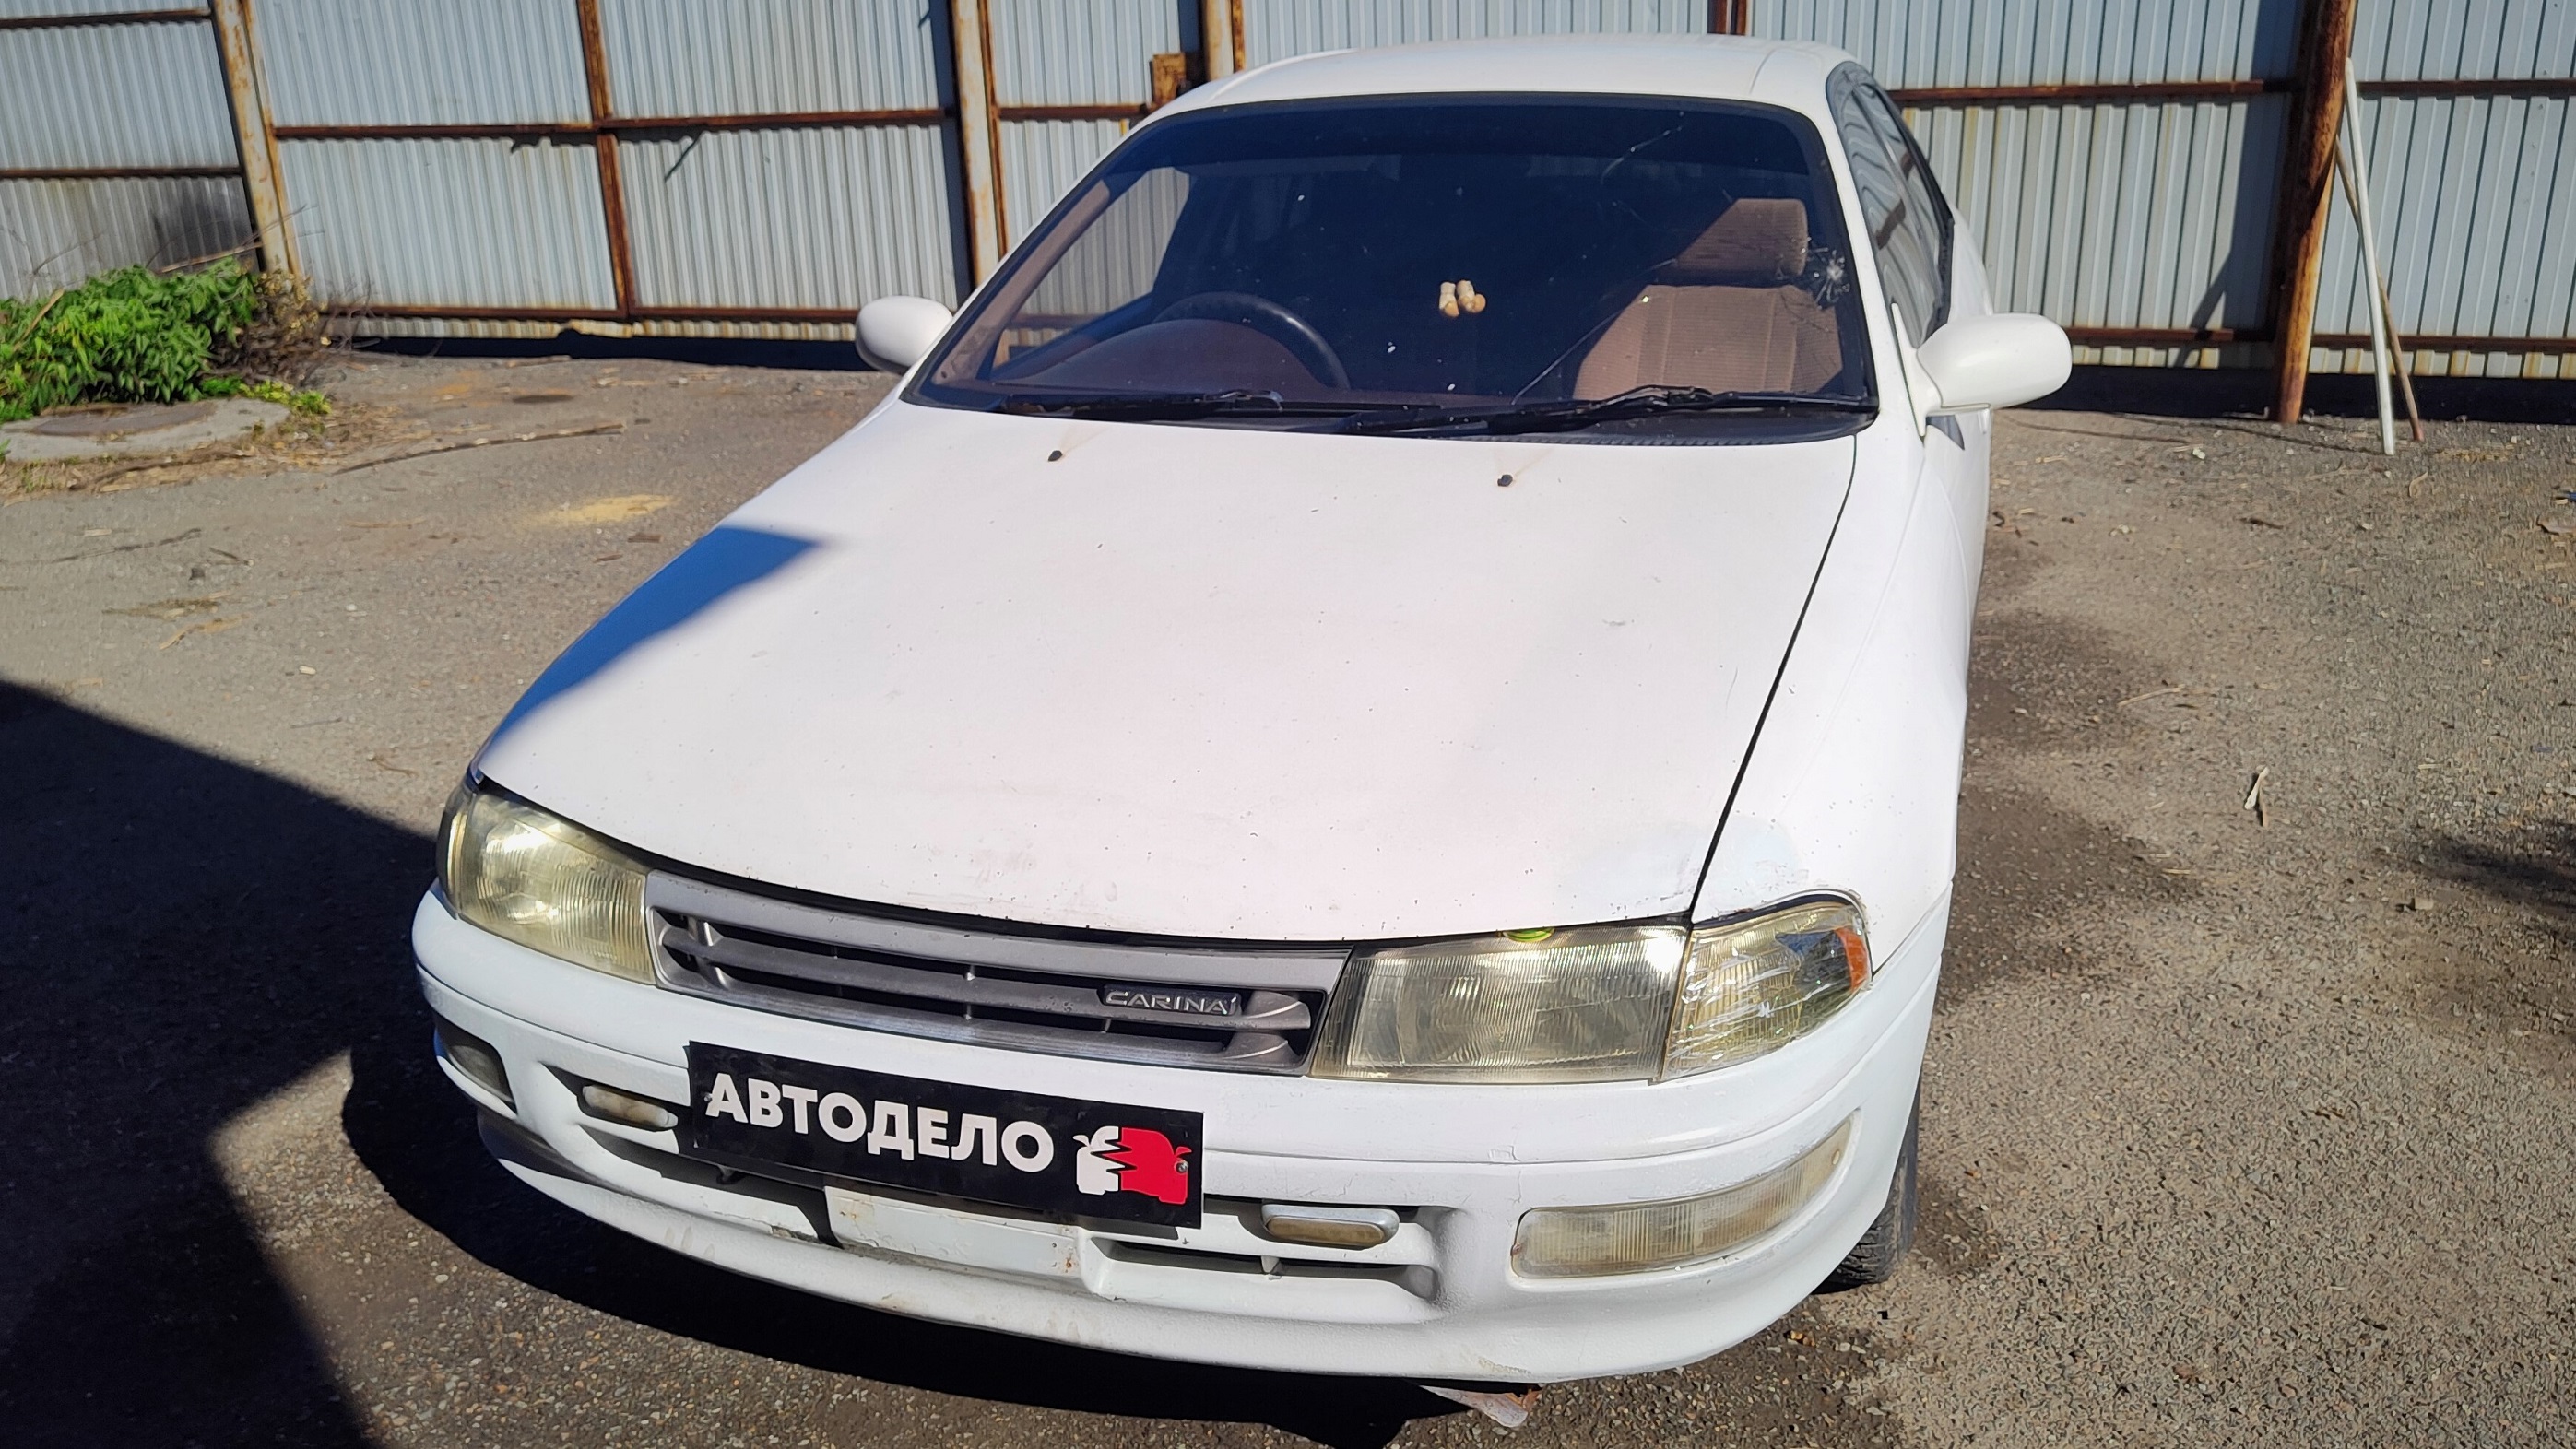 Разбор Toyota Carina T190 (VI, E-AT190) 1993 г.в., 4A-FE (1.6L, 115 л.с.), АКПП